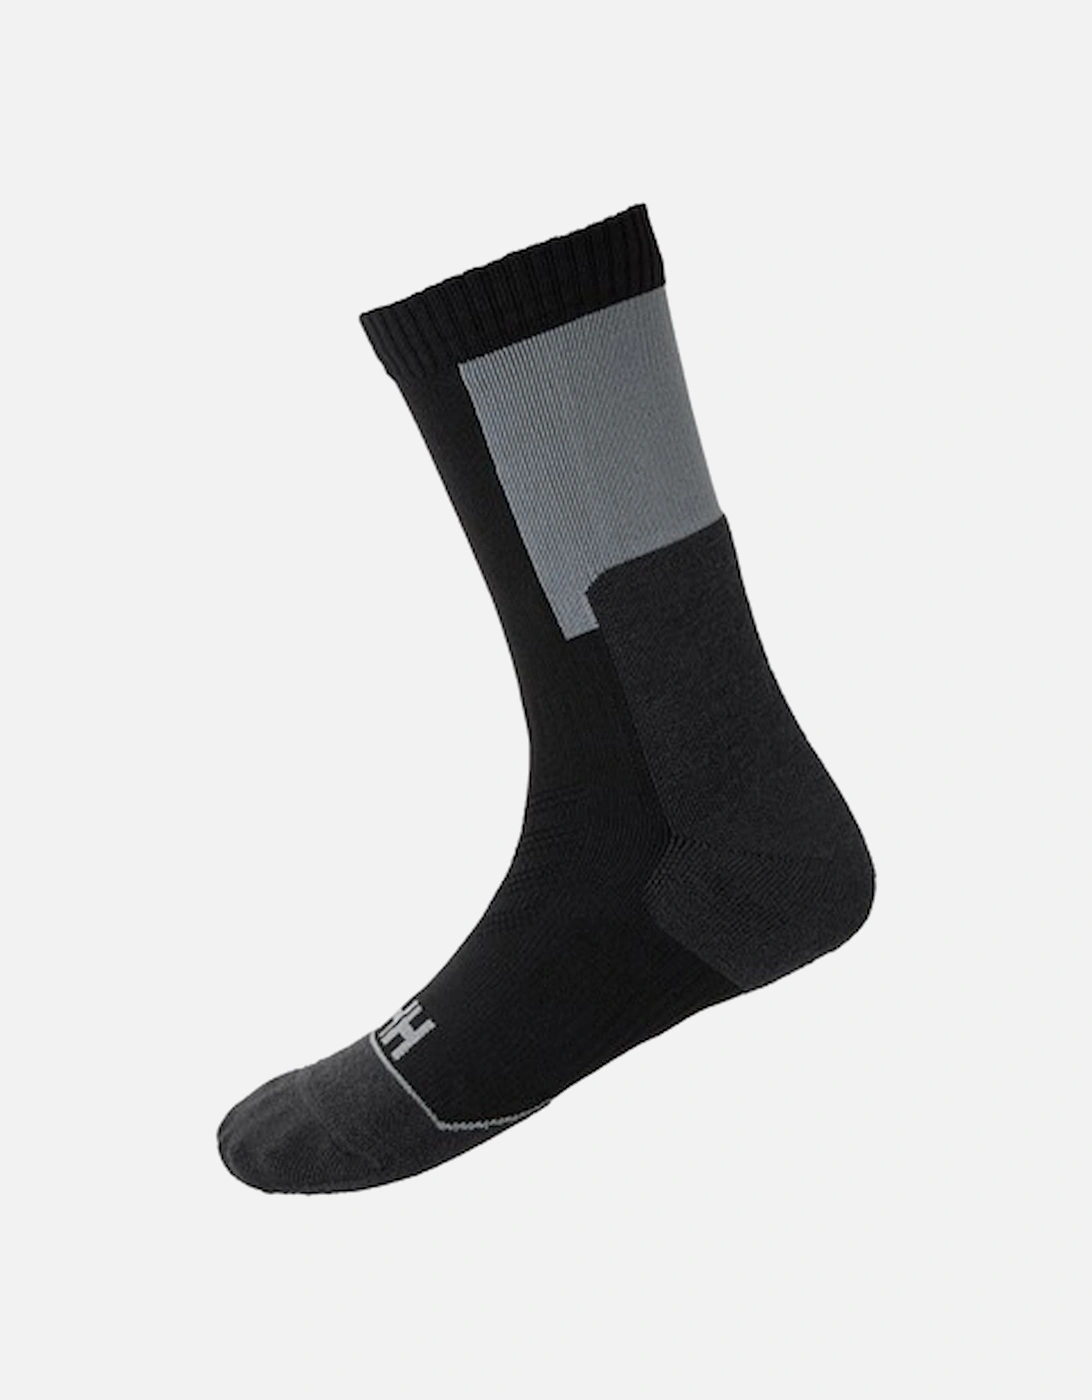 Men's Hiking Sock Technical Black, 2 of 1